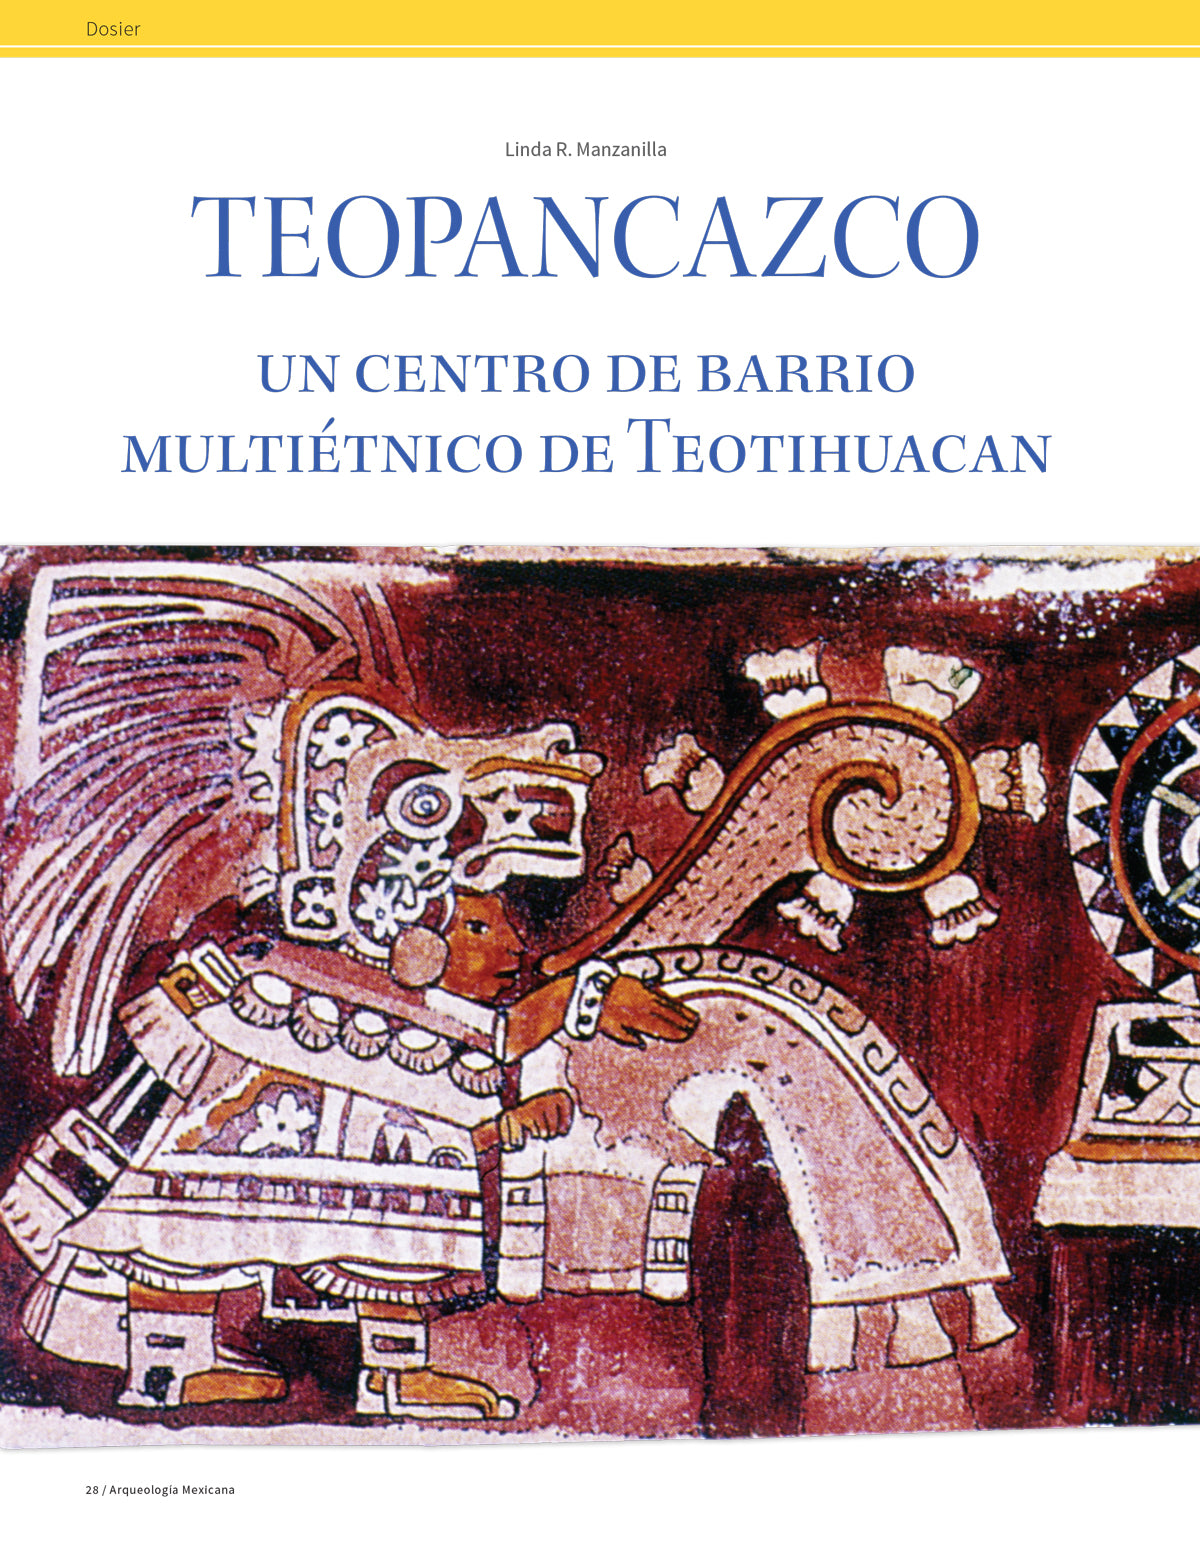 La vida cotidiana en Teotihuacan